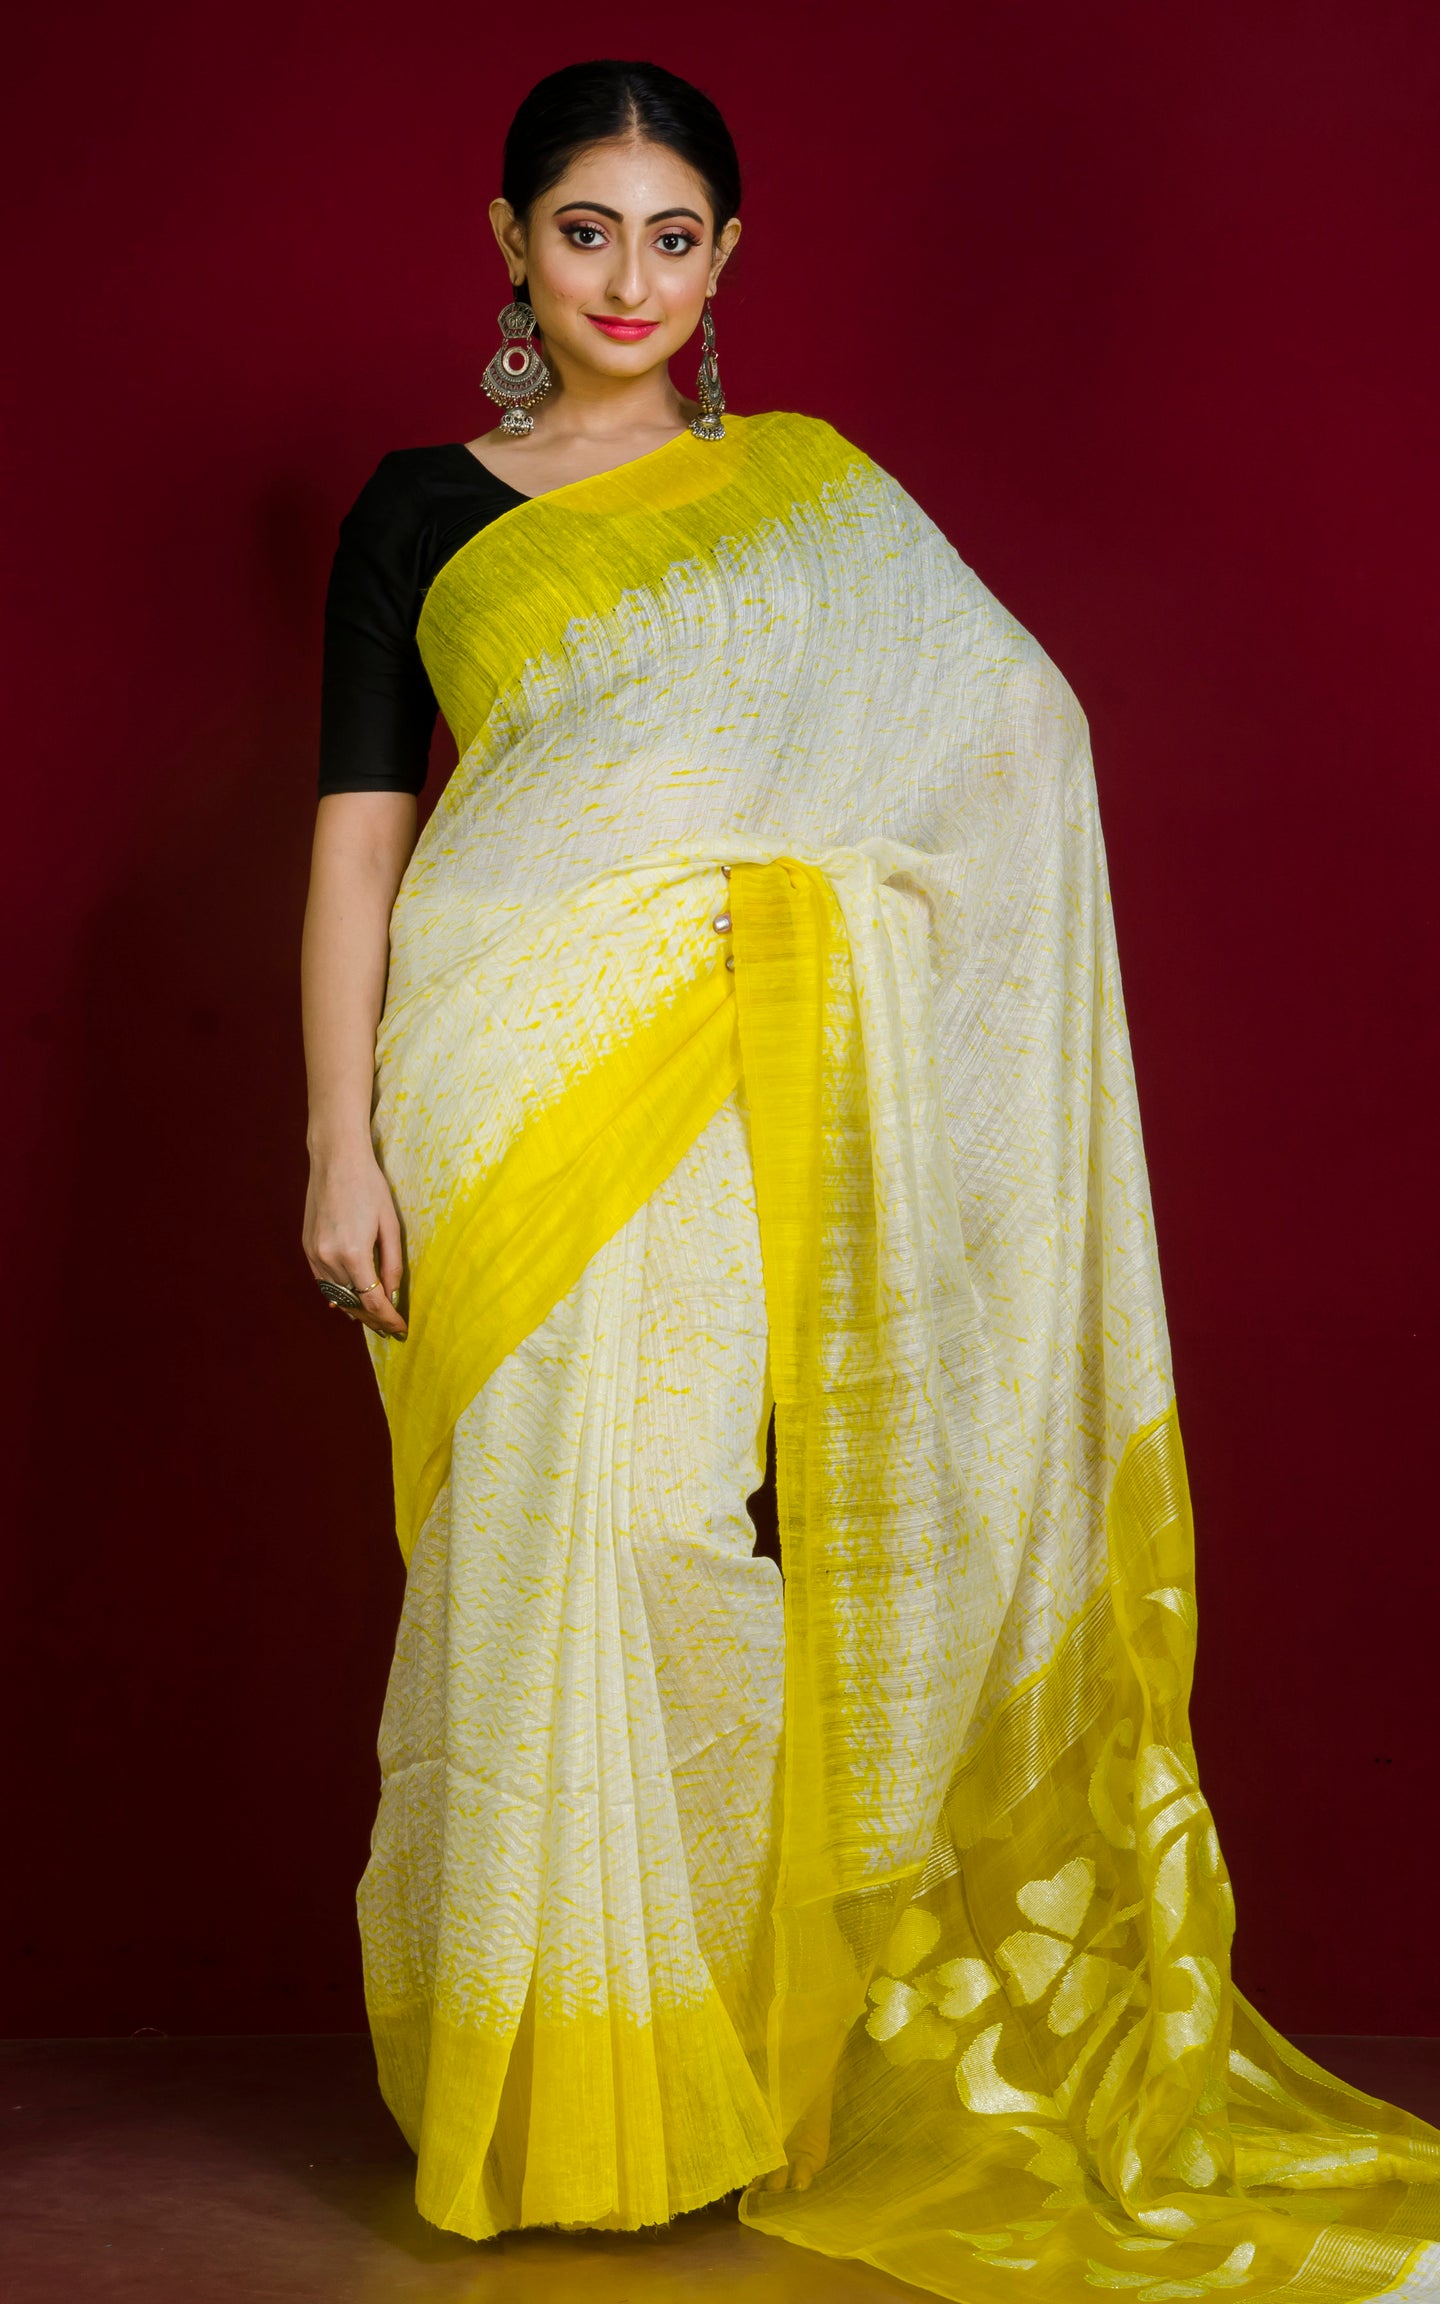 Pure Handloom Matka Shibori Jamdani Saree in Off White and Cadmium Yellow